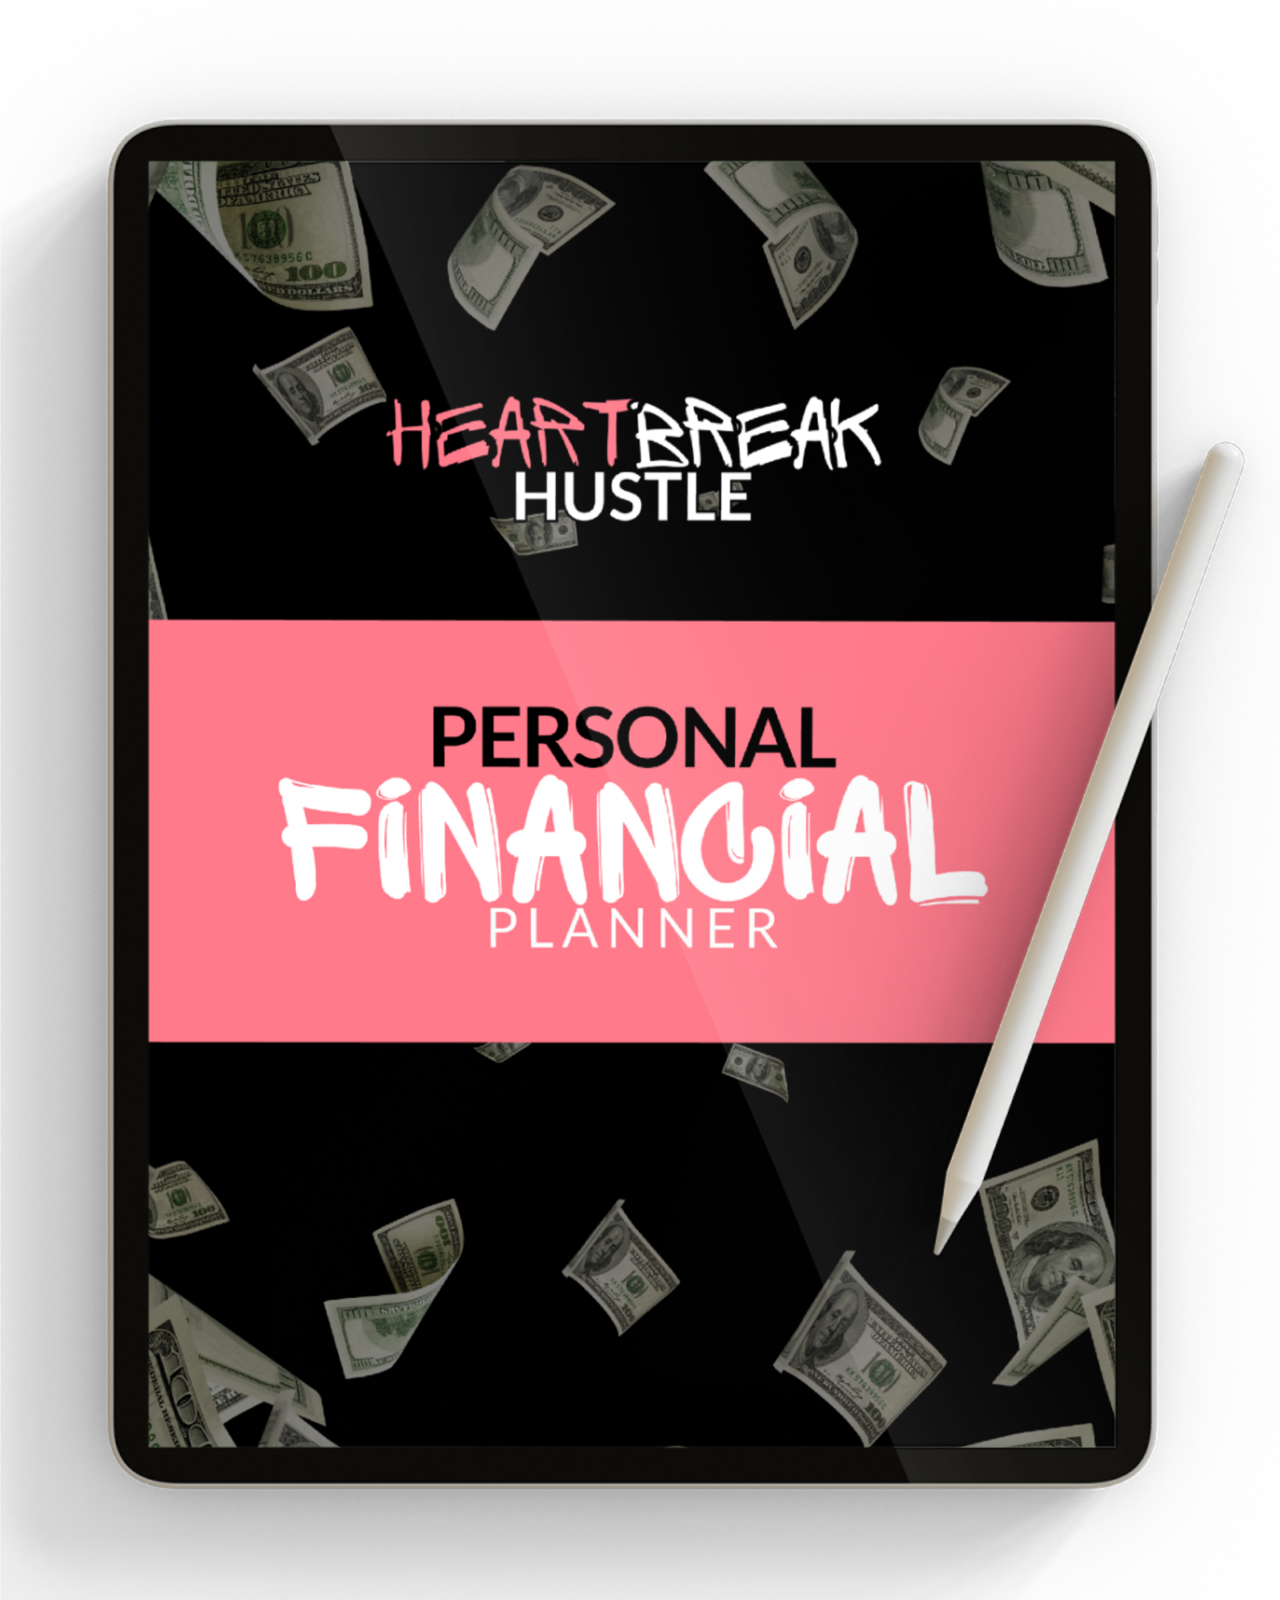 Heartbreak Hustle Personal Financial Planner